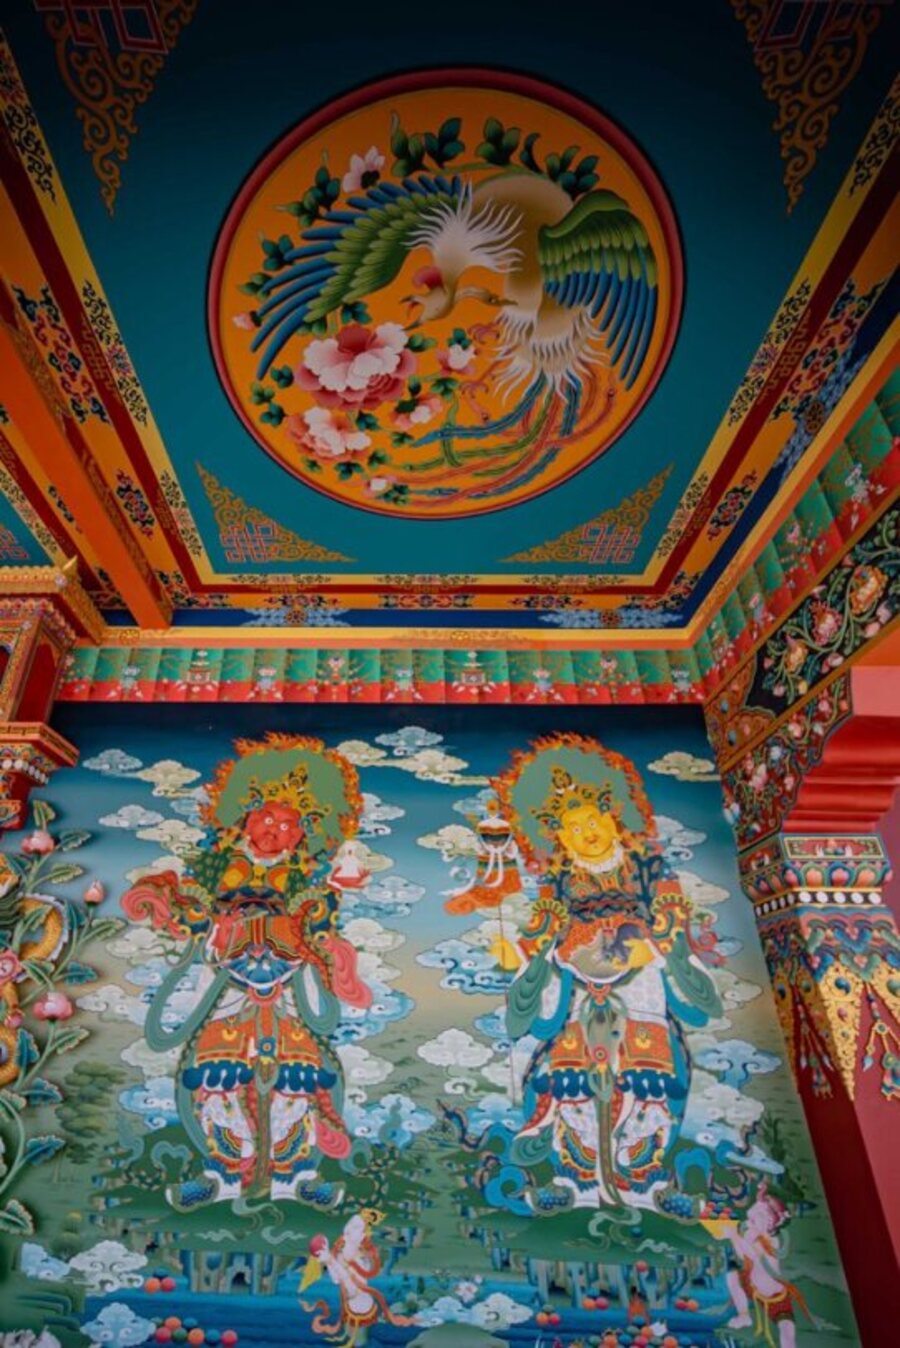 Tranh Thangka đặc trưng trong các công trình kiến trúc Phật giáo Kim Cương Thừa.